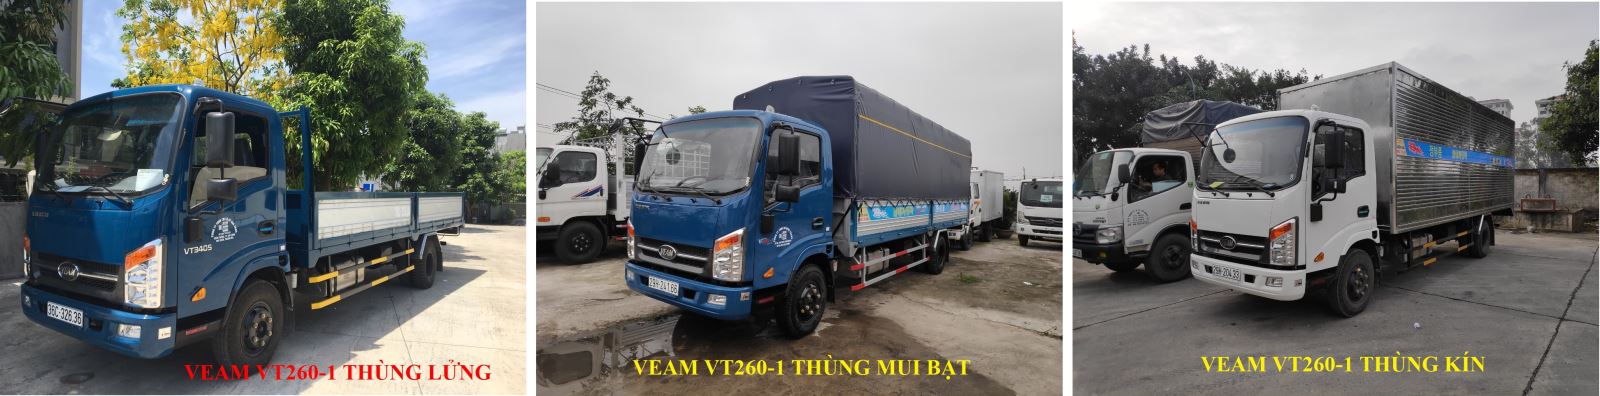 Xe tải Veam VT260-1 1t9 thùng 6m1